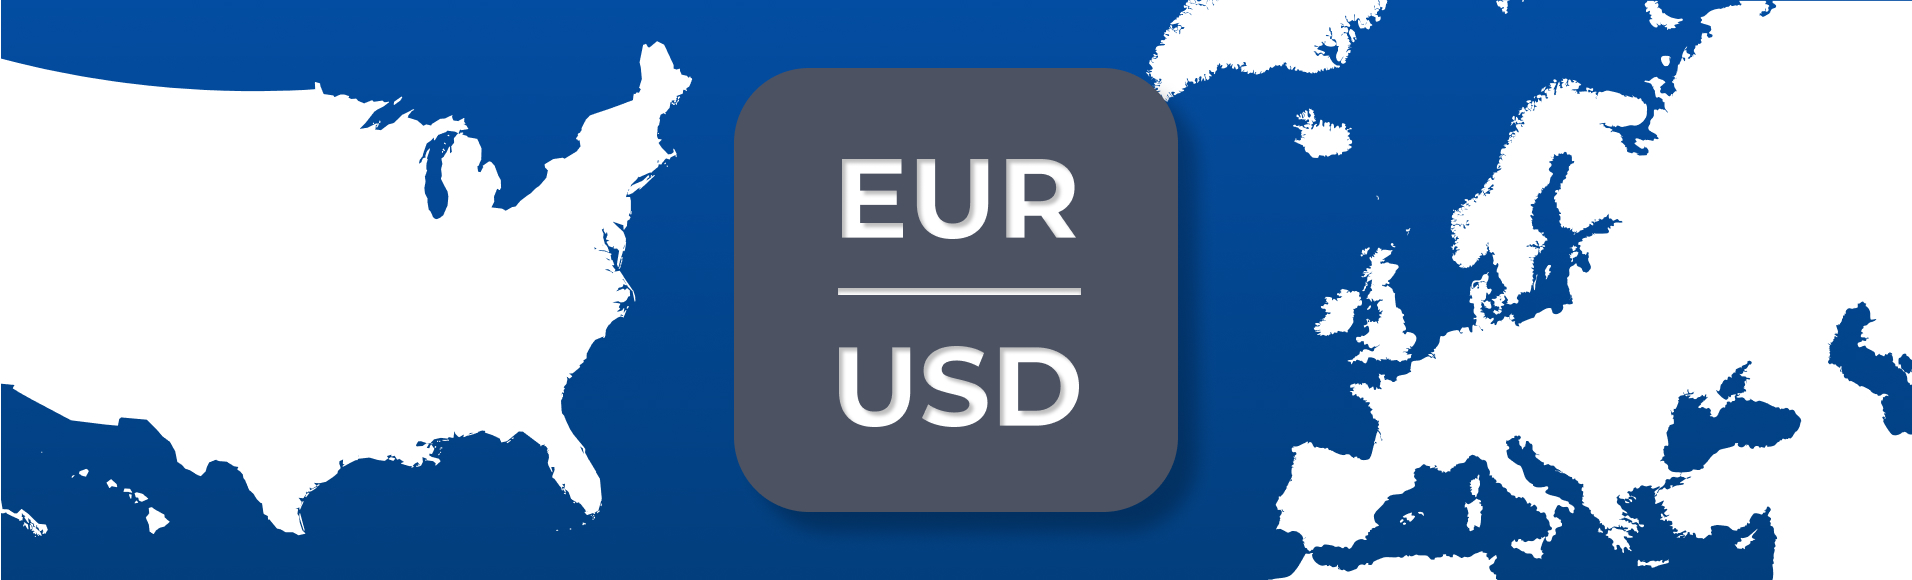 أزواج العملات الرئيسية. الجزء الأول: أوروبا وأمريكا